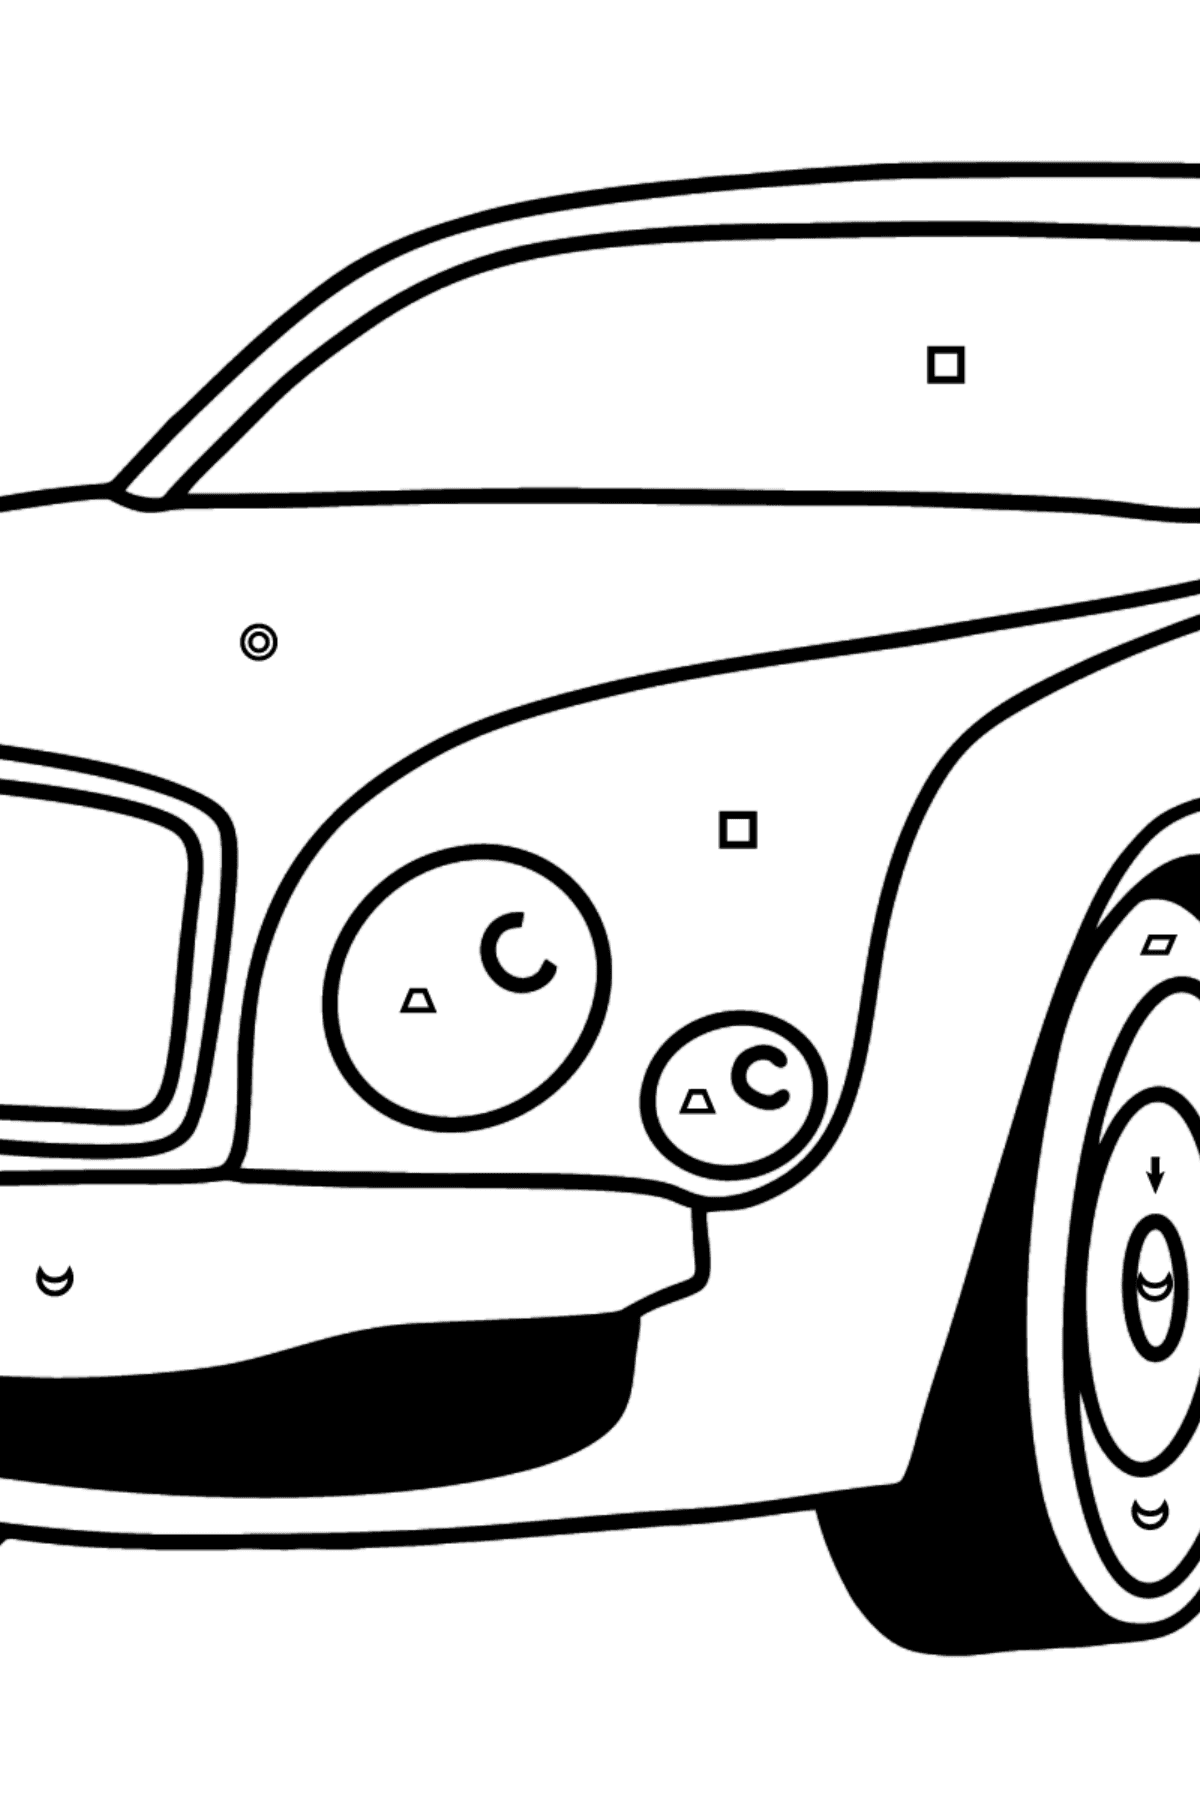 Kolorowanka z samochodami Bentley Mulsanne - Kolorowanie według symboli i figur geometrycznych dla dzieci